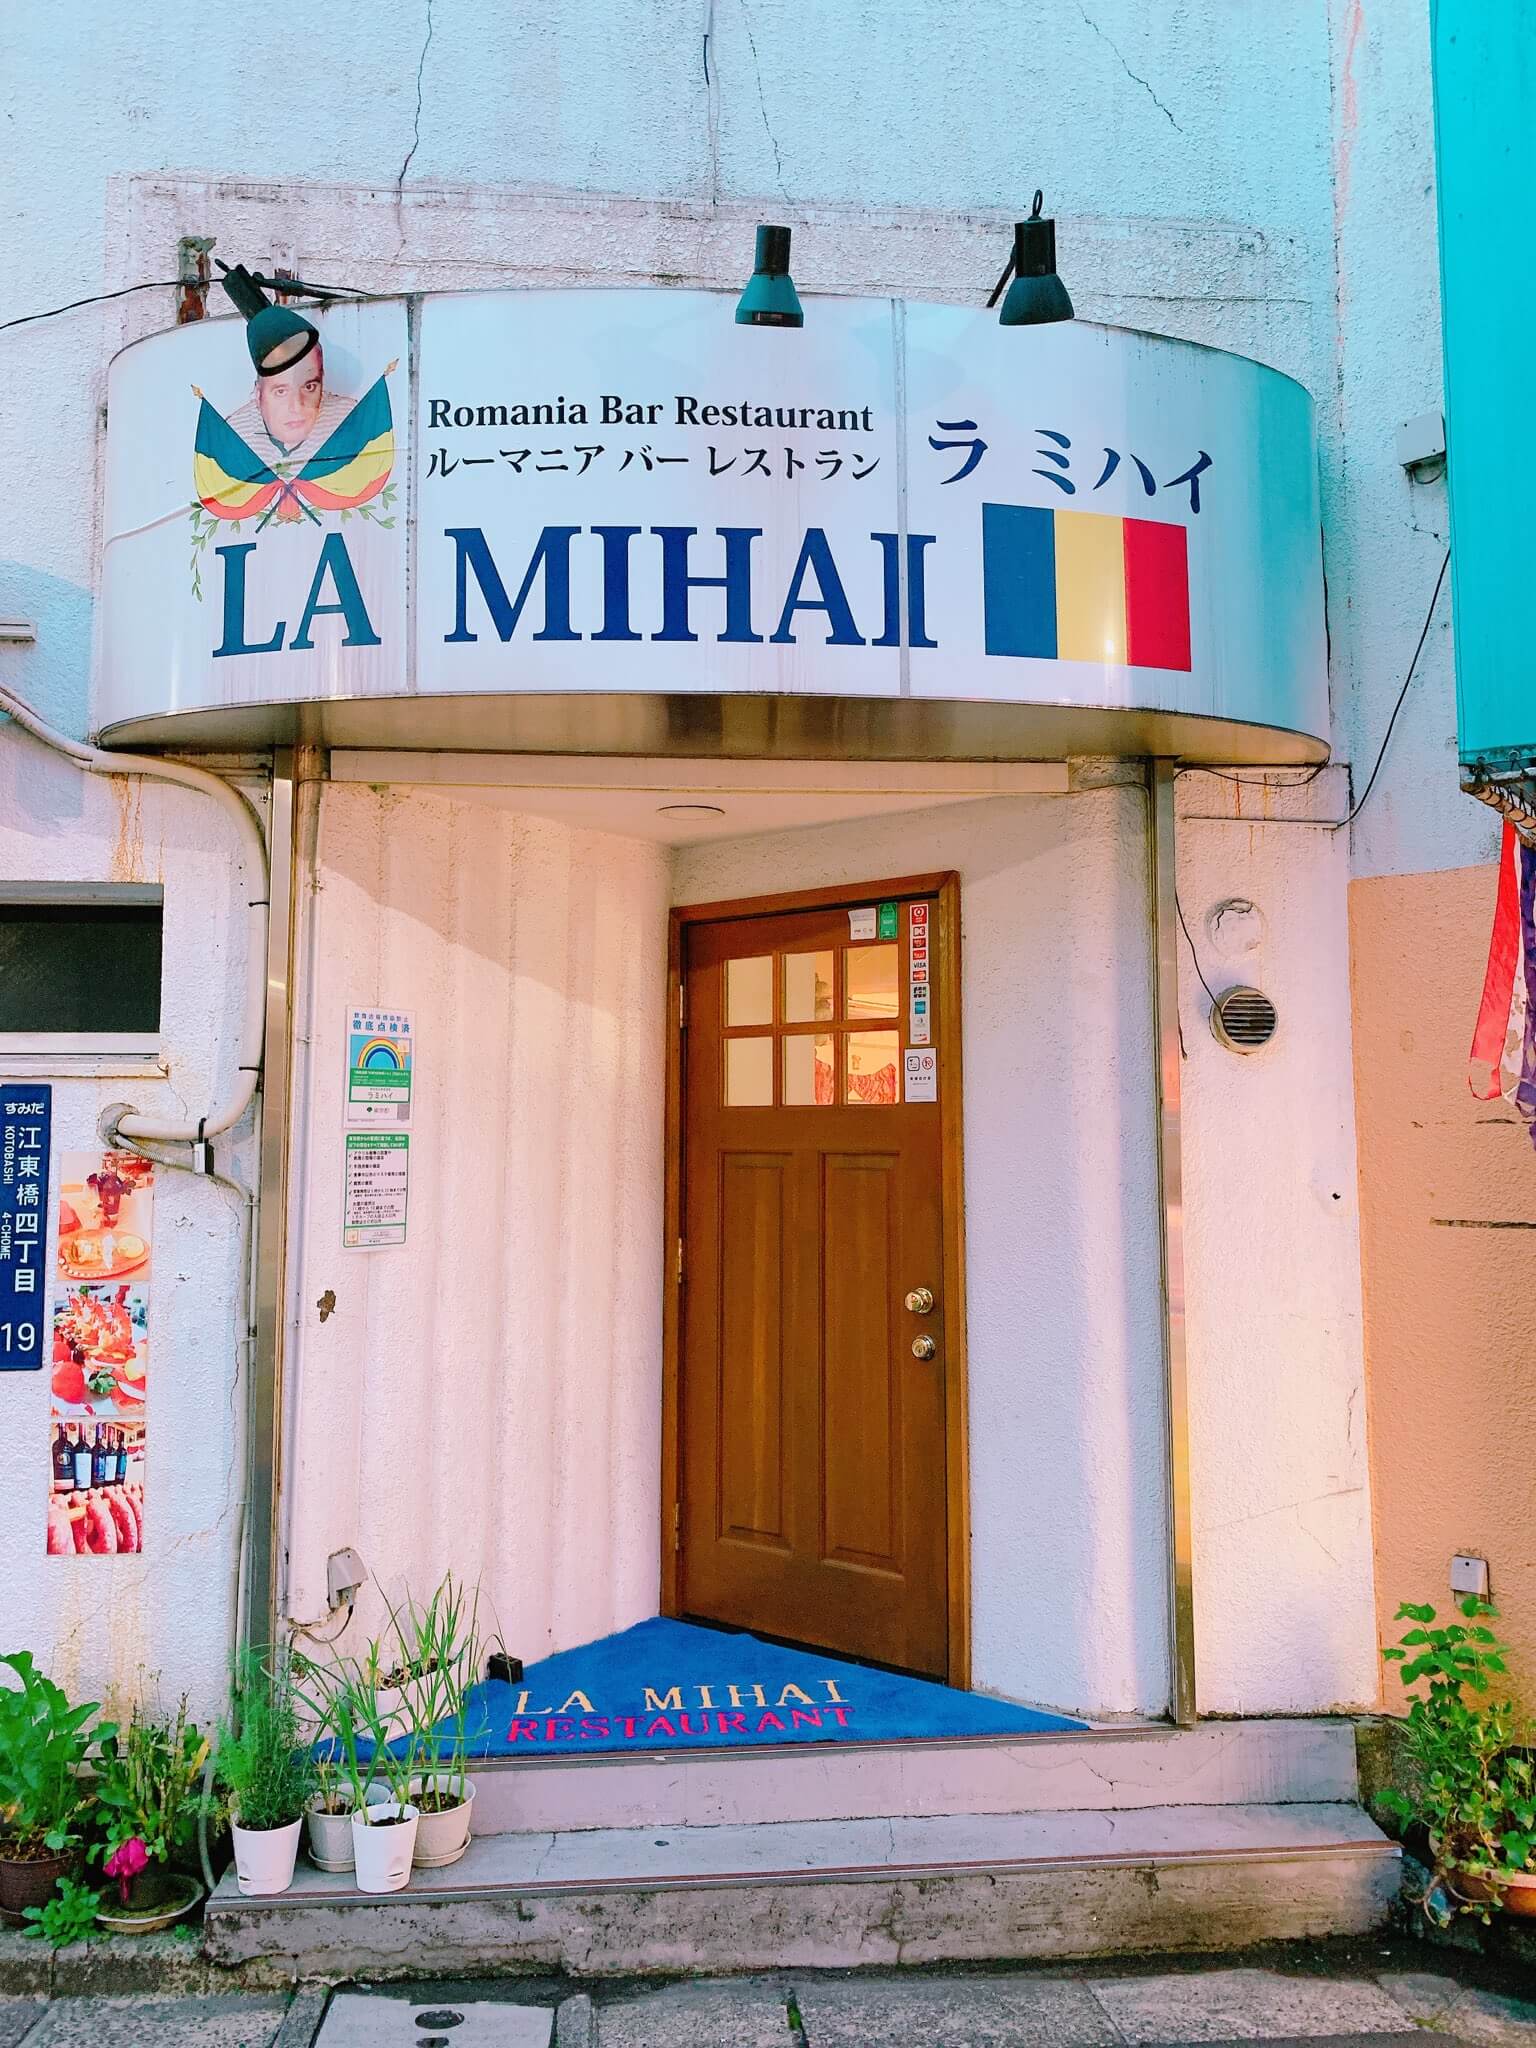 ルーマニア料理屋『LA MIHAI（ラ ミハイ）』